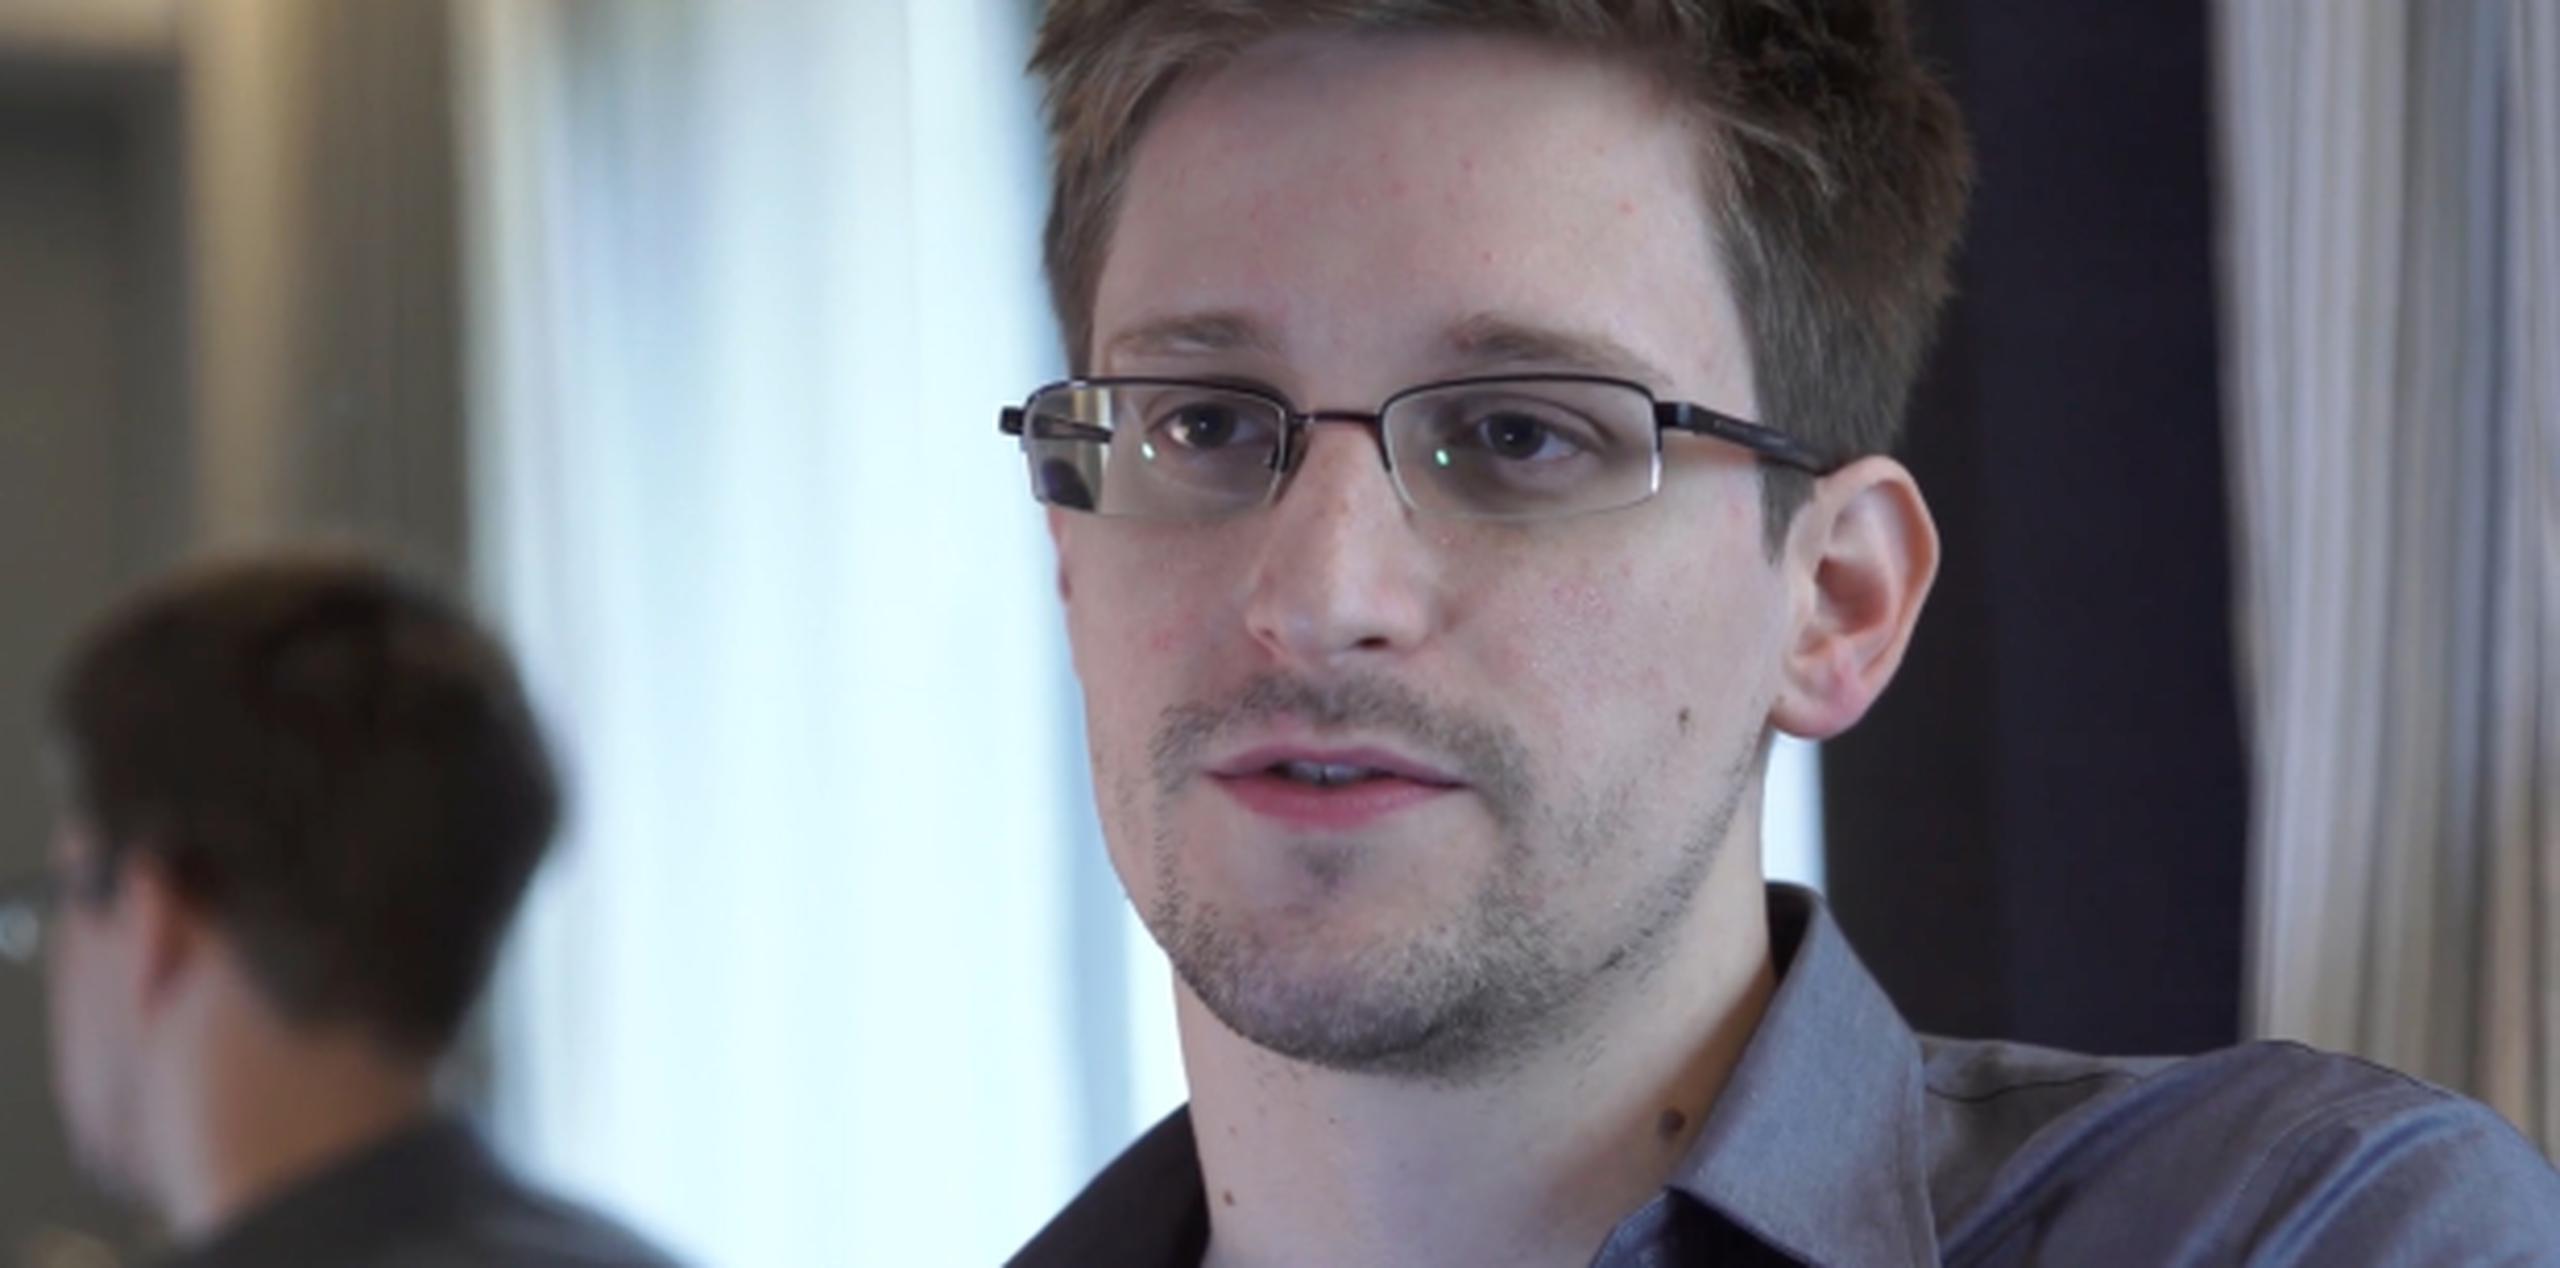 Snowden, que presuntamente se encuentra en el área de tránsito del aeropuerto de Moscú desde el 23 de junio, solicitó asilo temporal a Rusia la semana pasada. (Archivo)